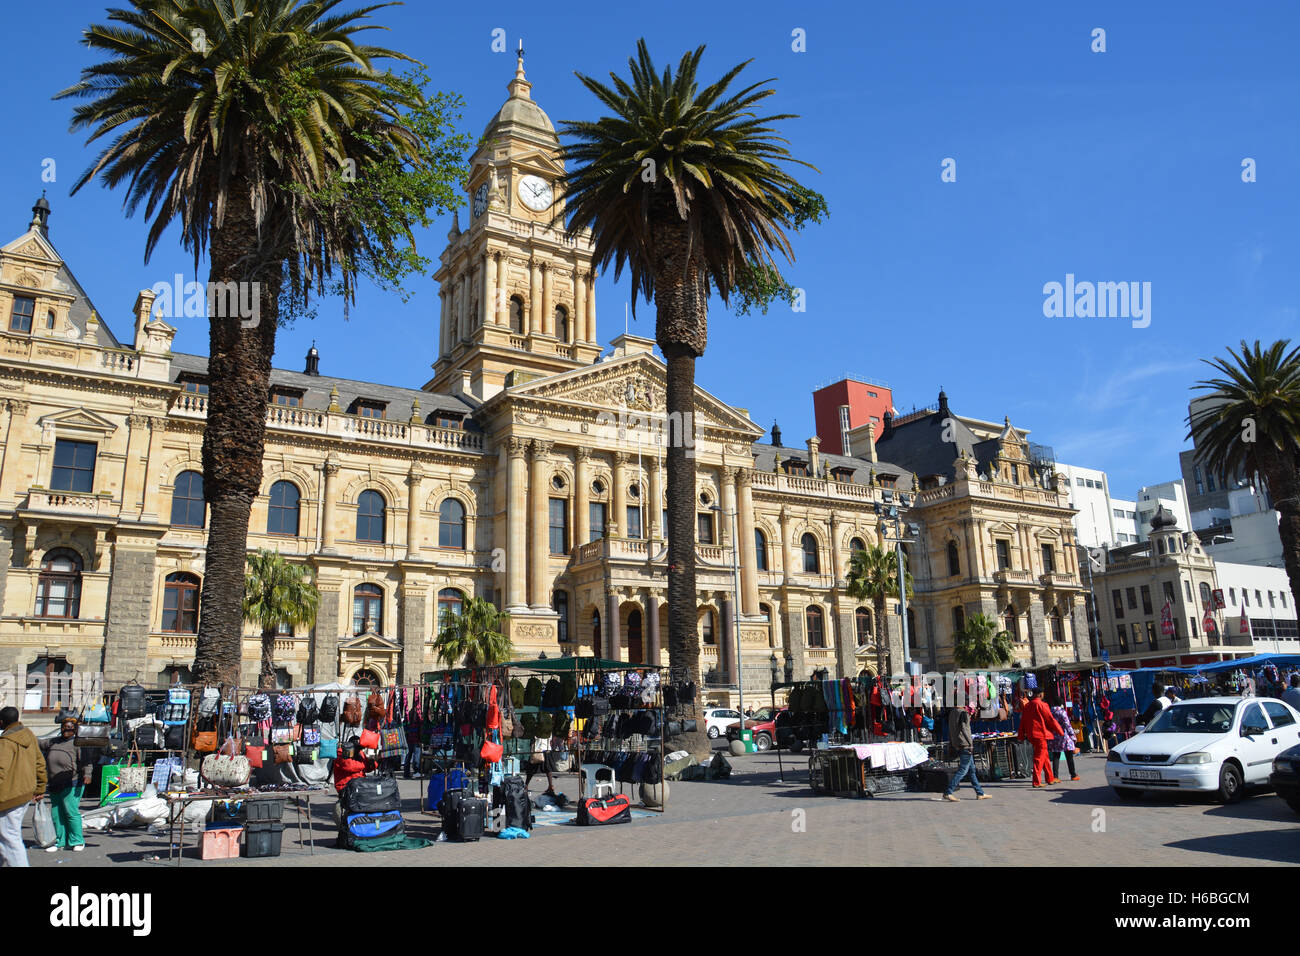 Alle möglichen Dinge stehen zum Verkauf bei Markttag auf dem Gelände der Grand Parade vor Cape Town City Hall, Südafrika Stockfoto